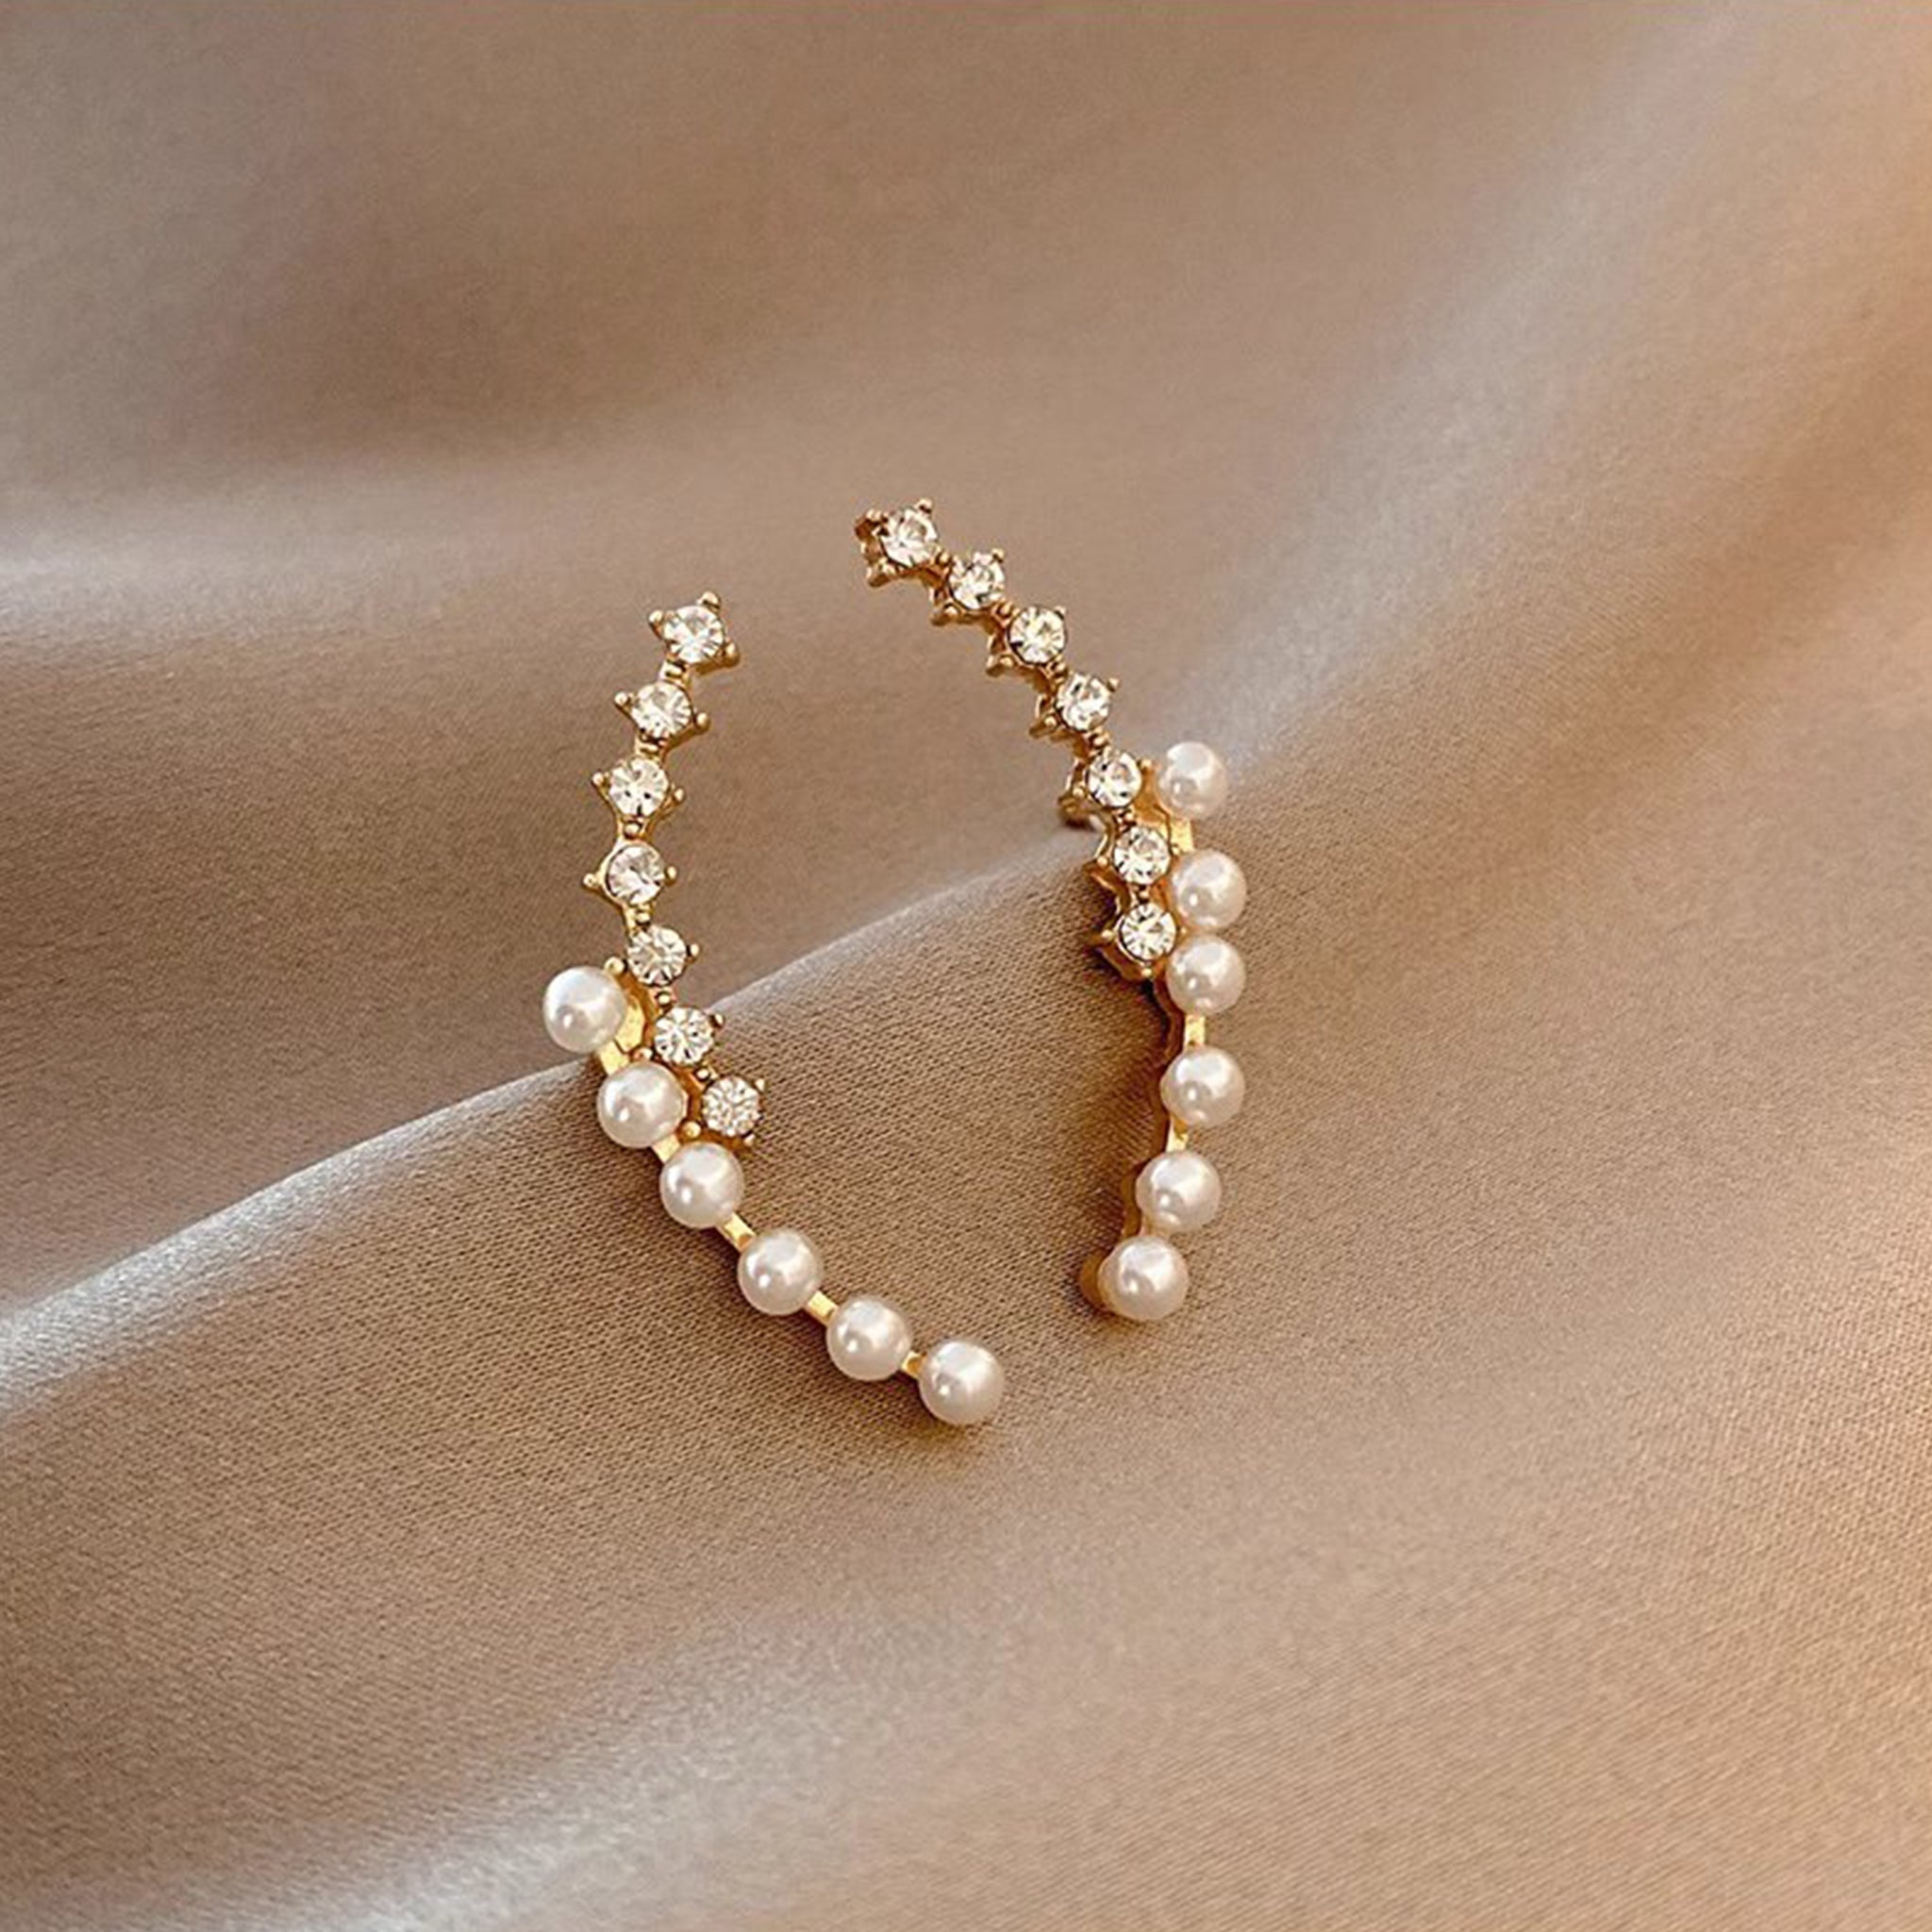 Long Baroque Pearl Earrings 1pair